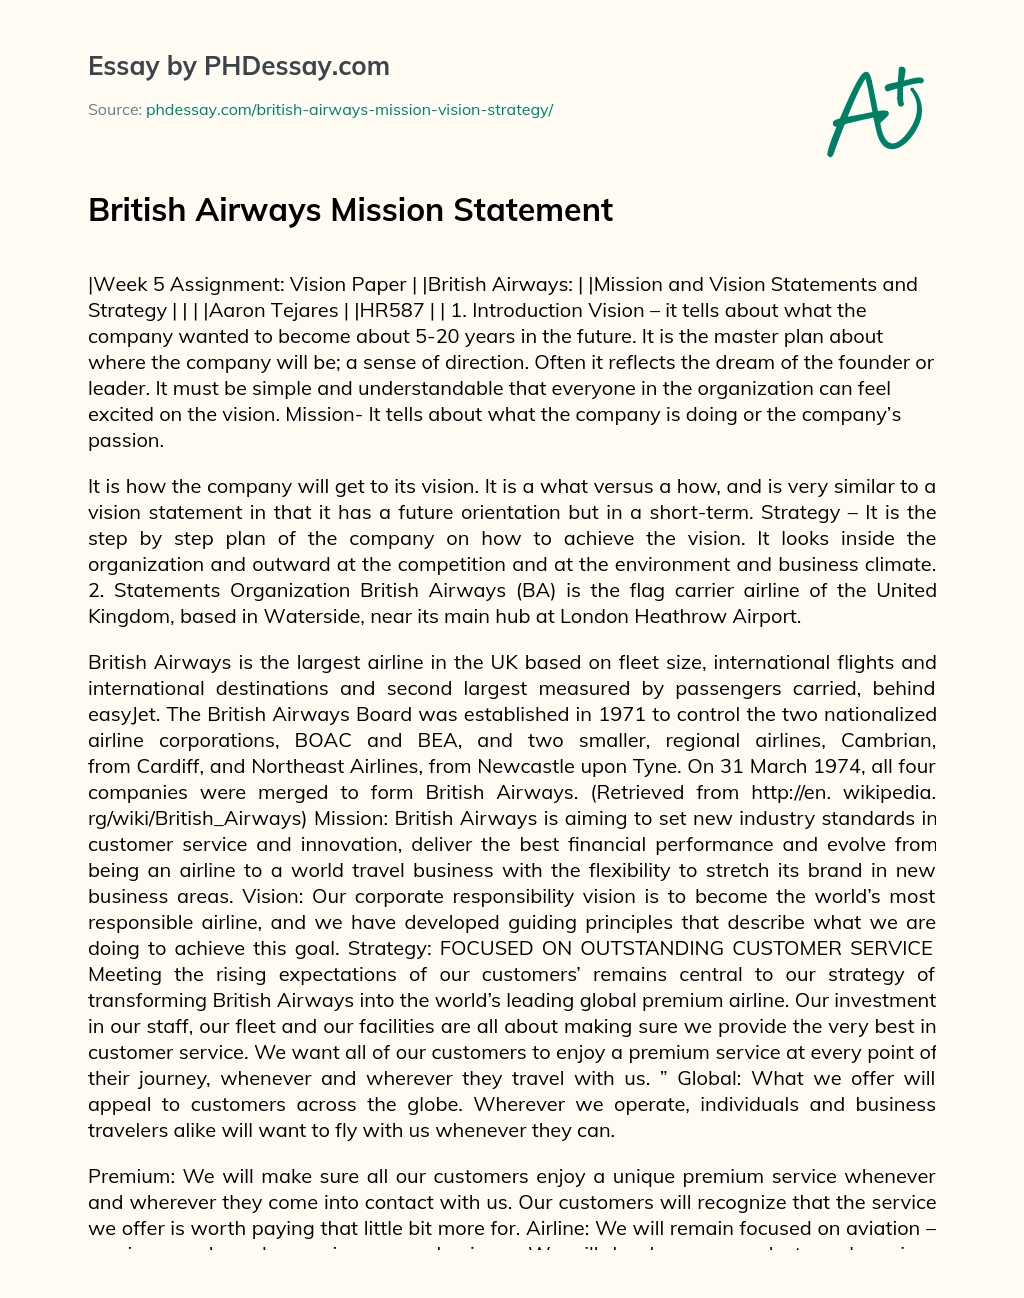 British Airways Mission Statement essay